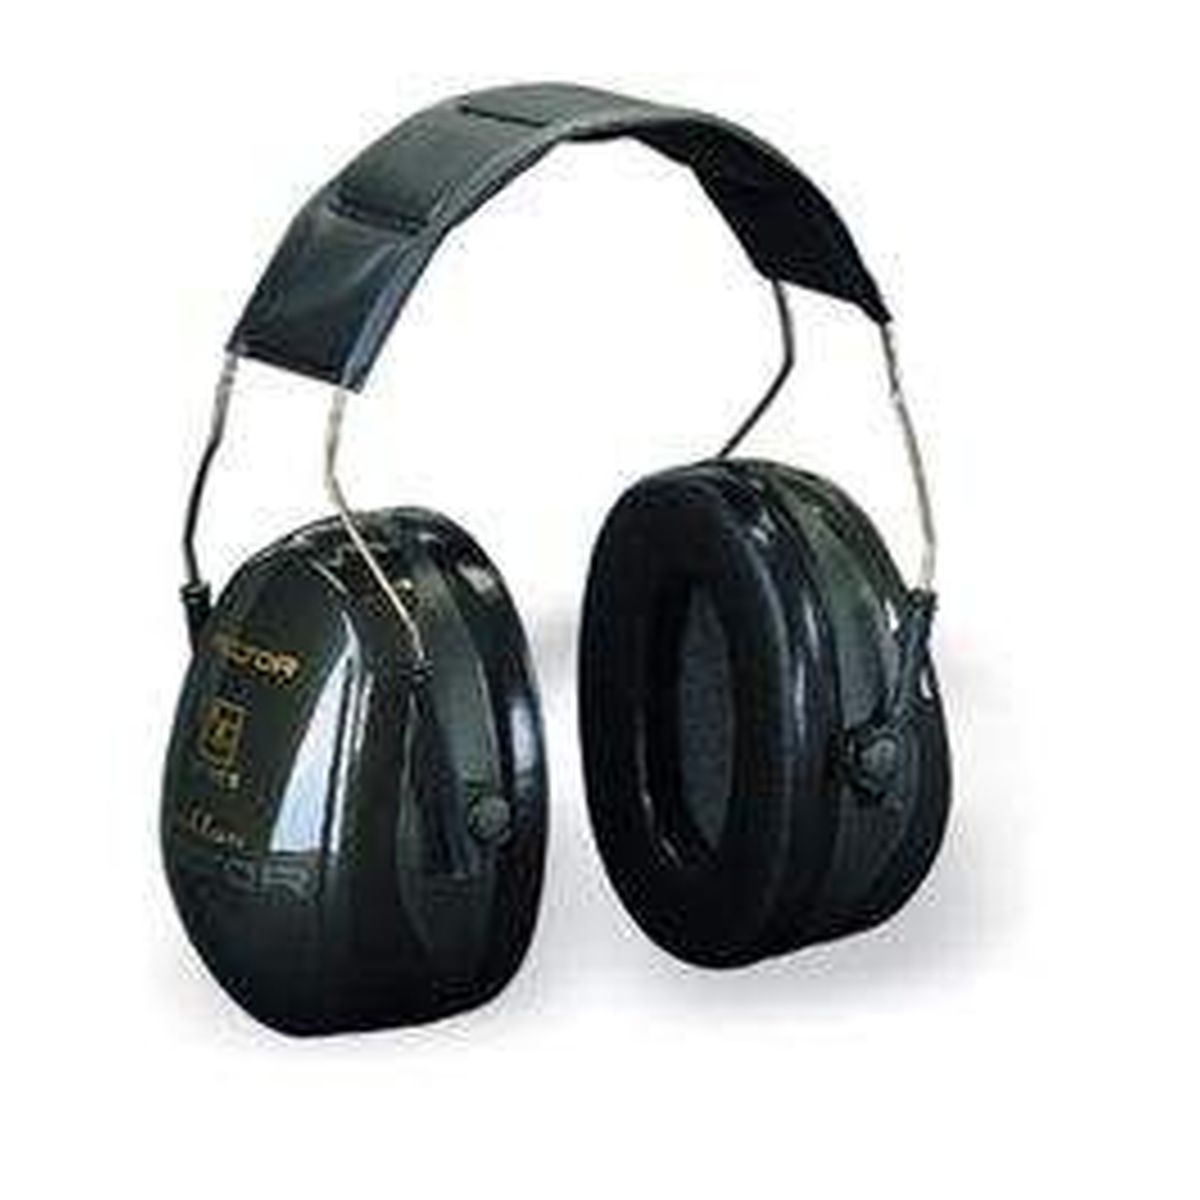 Gehörschutz Optime2 H520A grün 